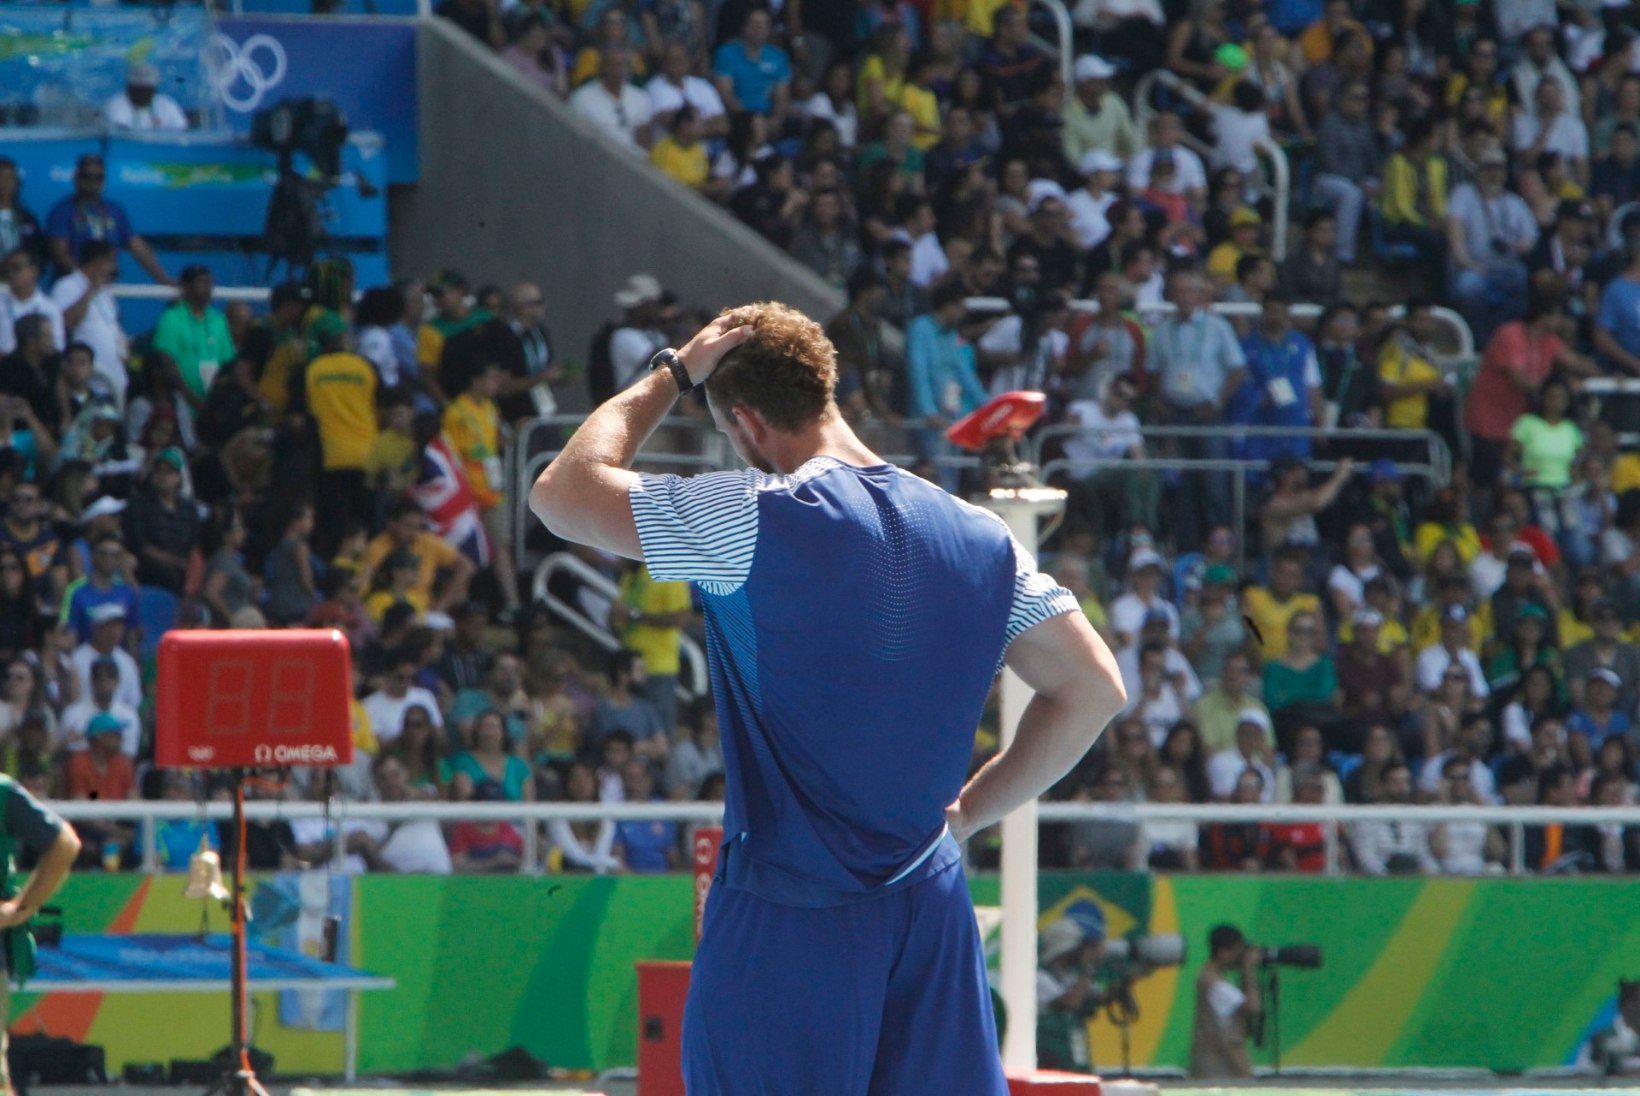 ÕL RIOS | Kõige napimalt medalita jäänud Martin Kupper: sain juba medalimaitse suhu, aga nii see sport on!